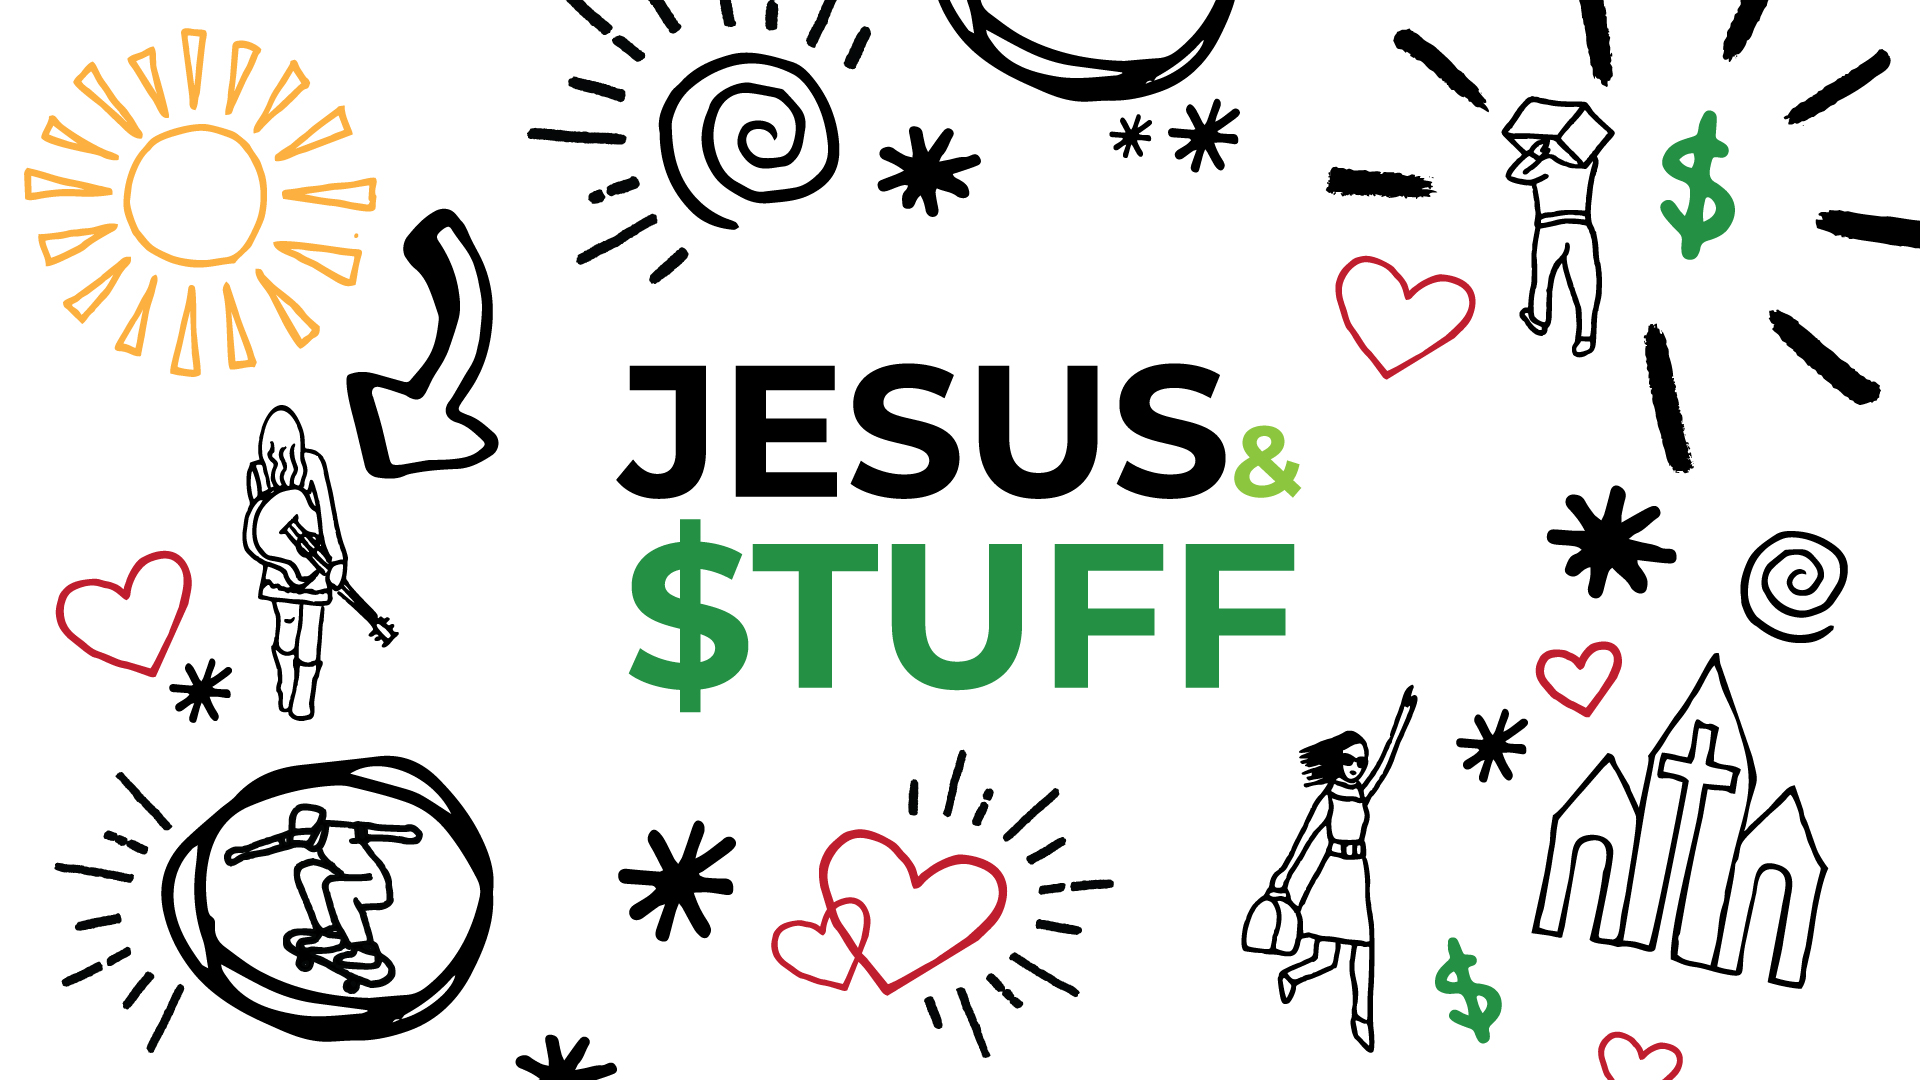 Jesus & $tuff - Part VII